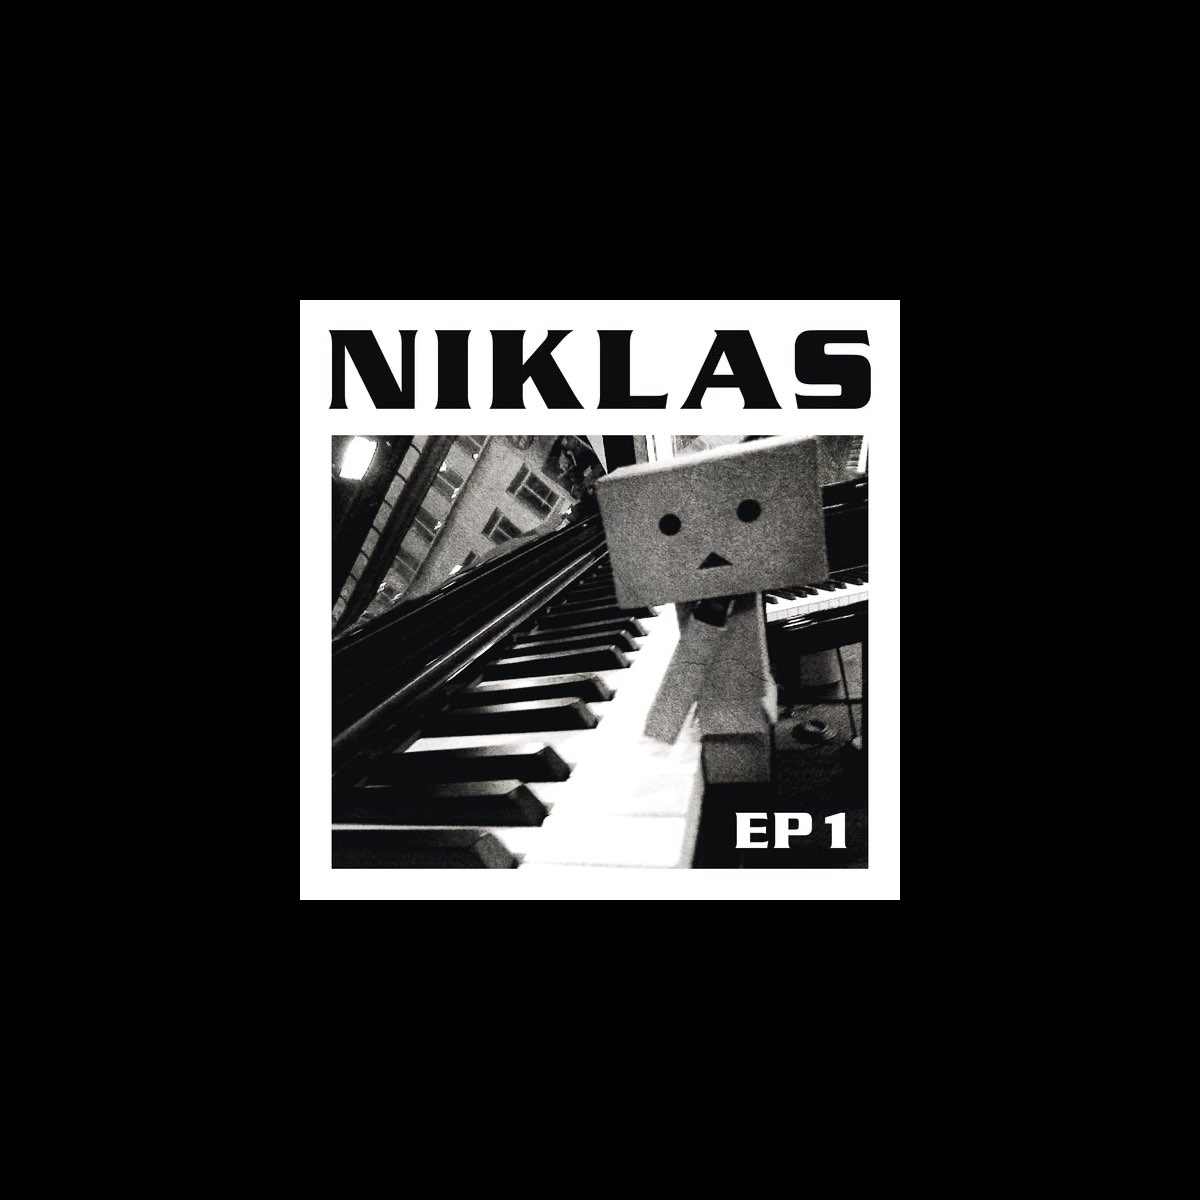 EP 1 by Niklas on Apple